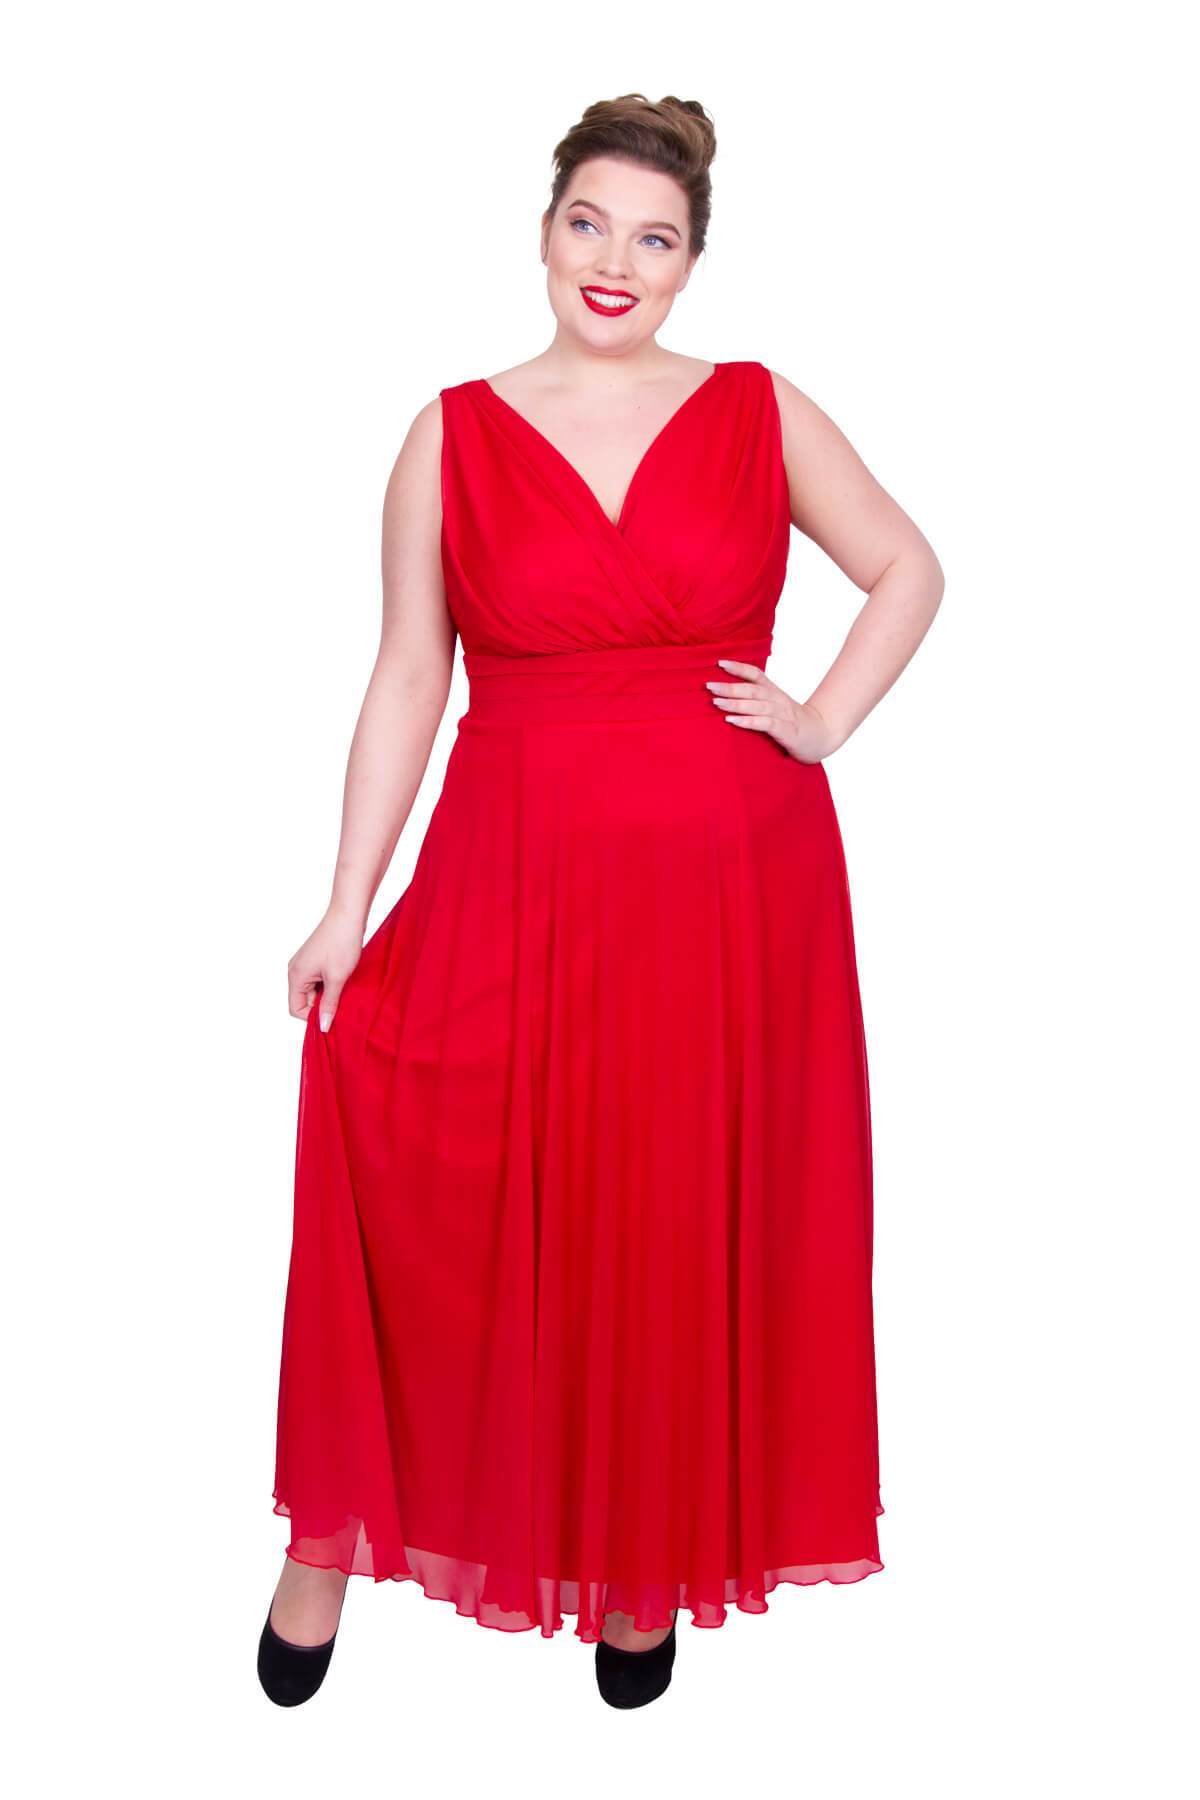 Scarlett & Jo Dresses PIL BOX RED / 10 Nancy Marilyn Chiffon Maxi Dress